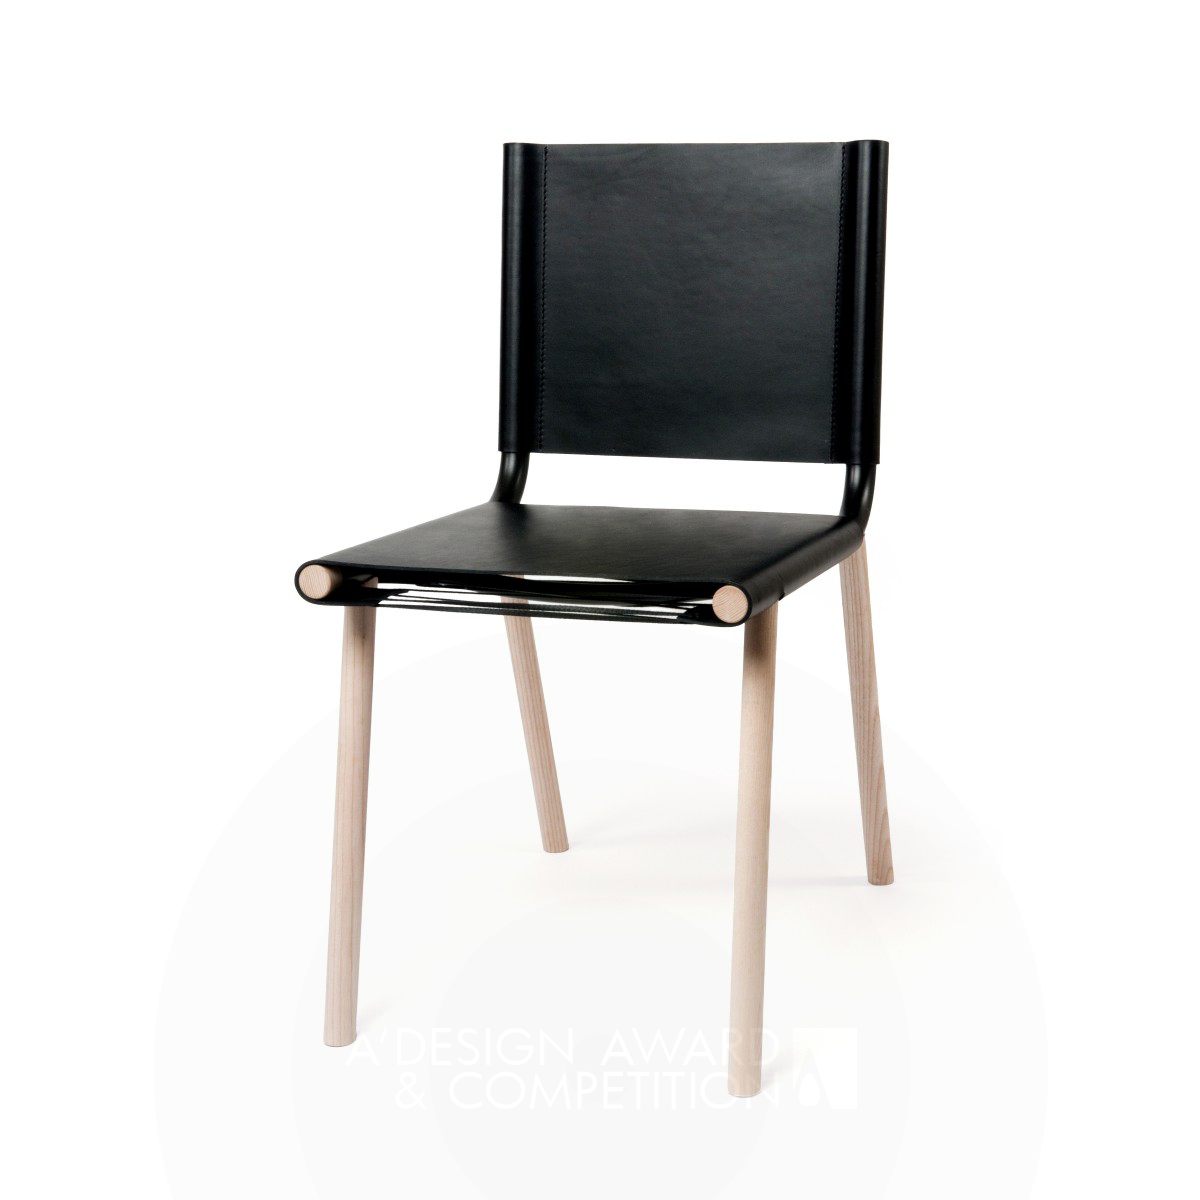 Japan <b>Chair